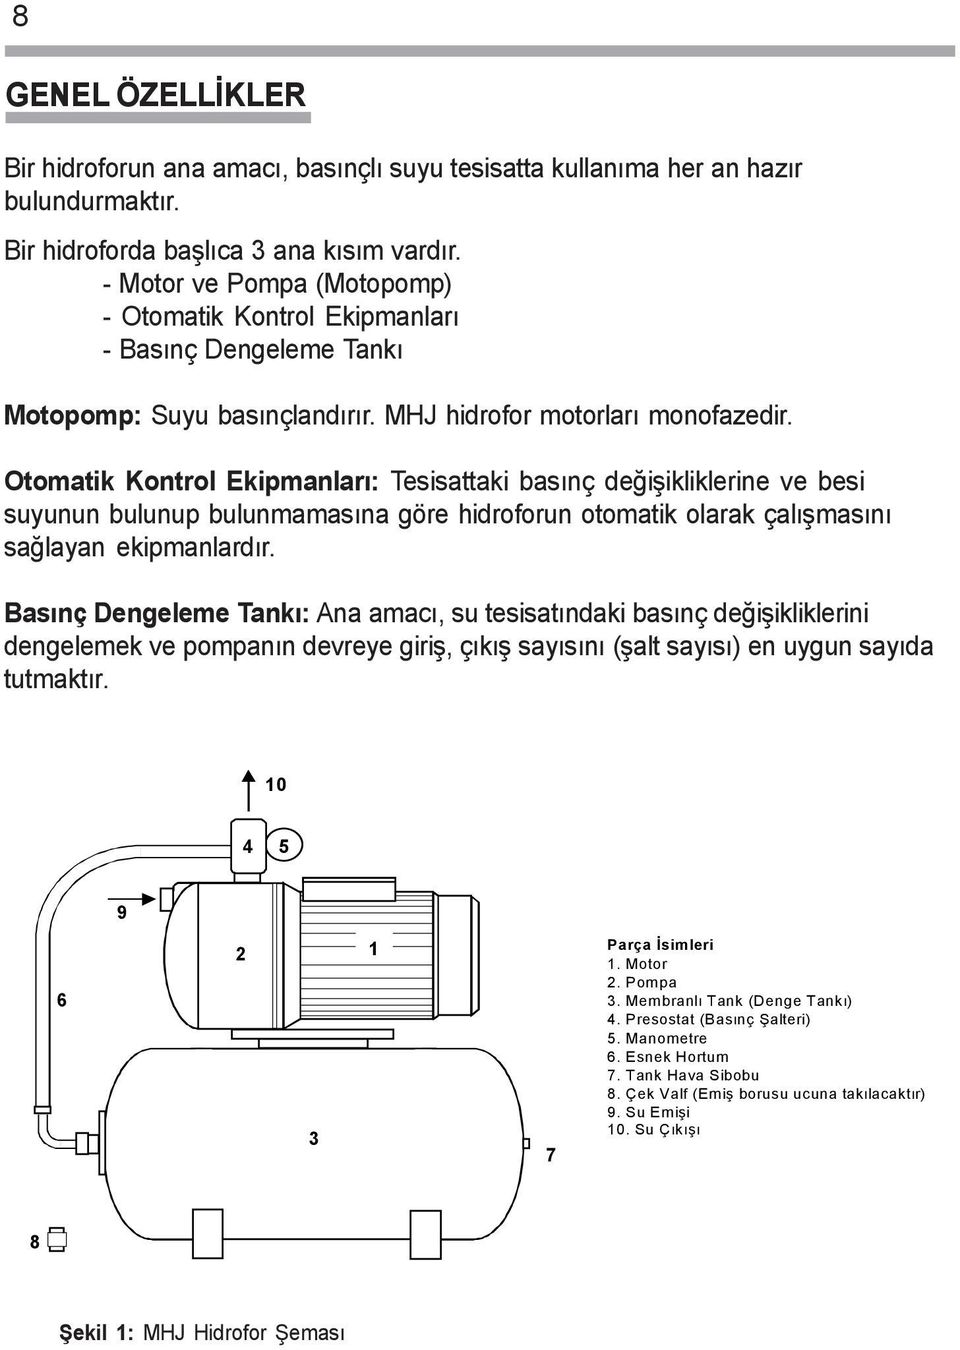 Otomatik Kontrol Ekipmanlarý: Tesisattaki basýnç deðiþikliklerine ve besi suyunun bulunup bulunmamasýna göre hidroforun otomatik olarak çalýþmasýný saðlayan ekipmanlardýr.